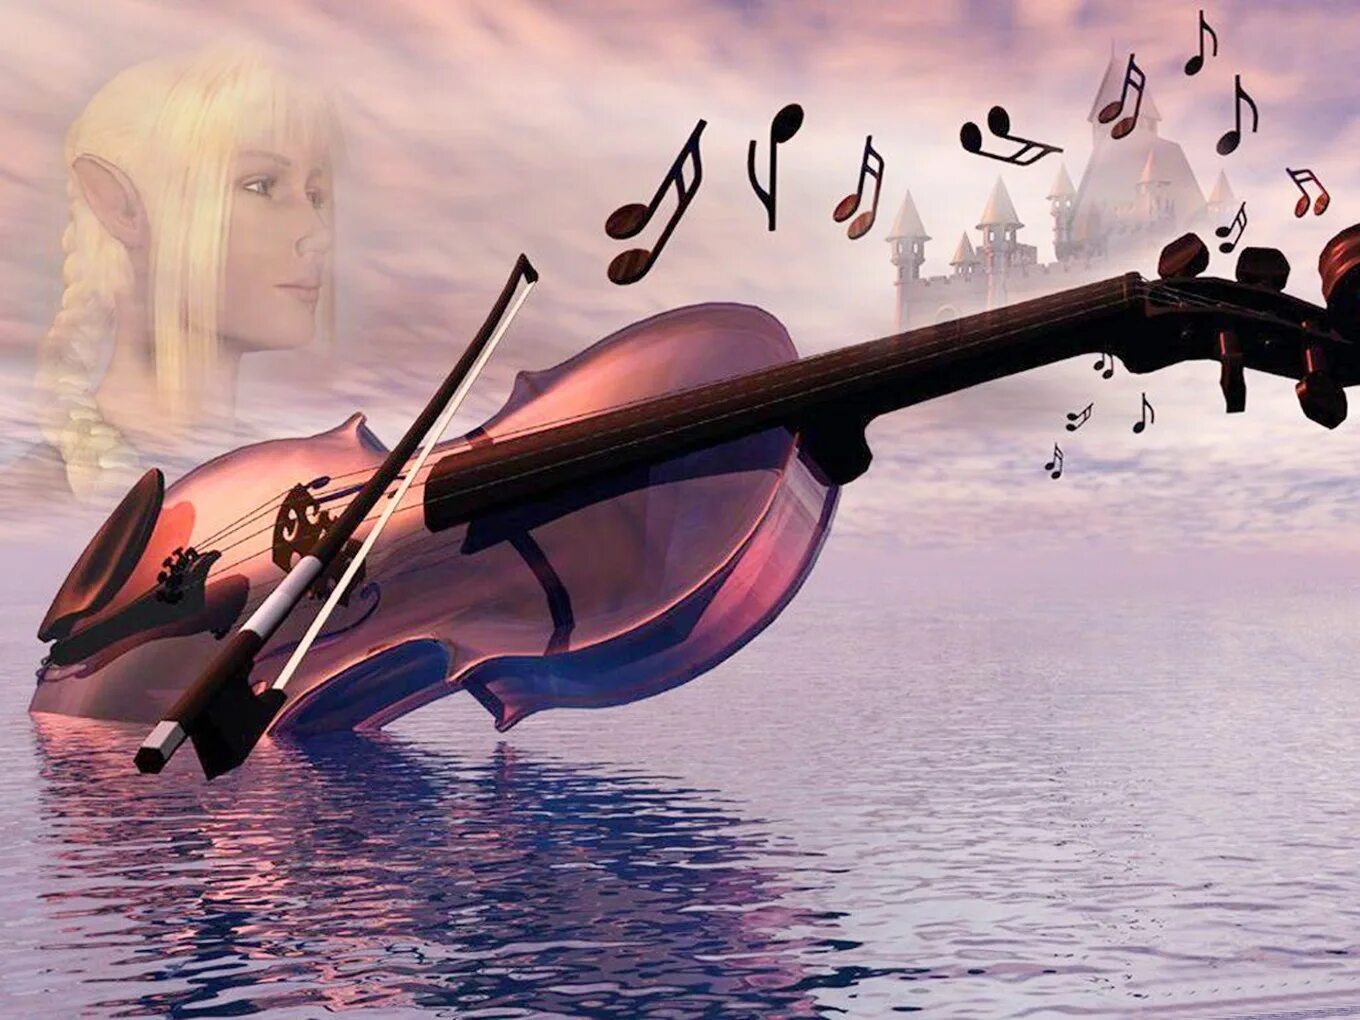 Слушать песни за душу берут. Скрипка. Скрипка и море. Волшебная скрипка. Скрипка и небо.